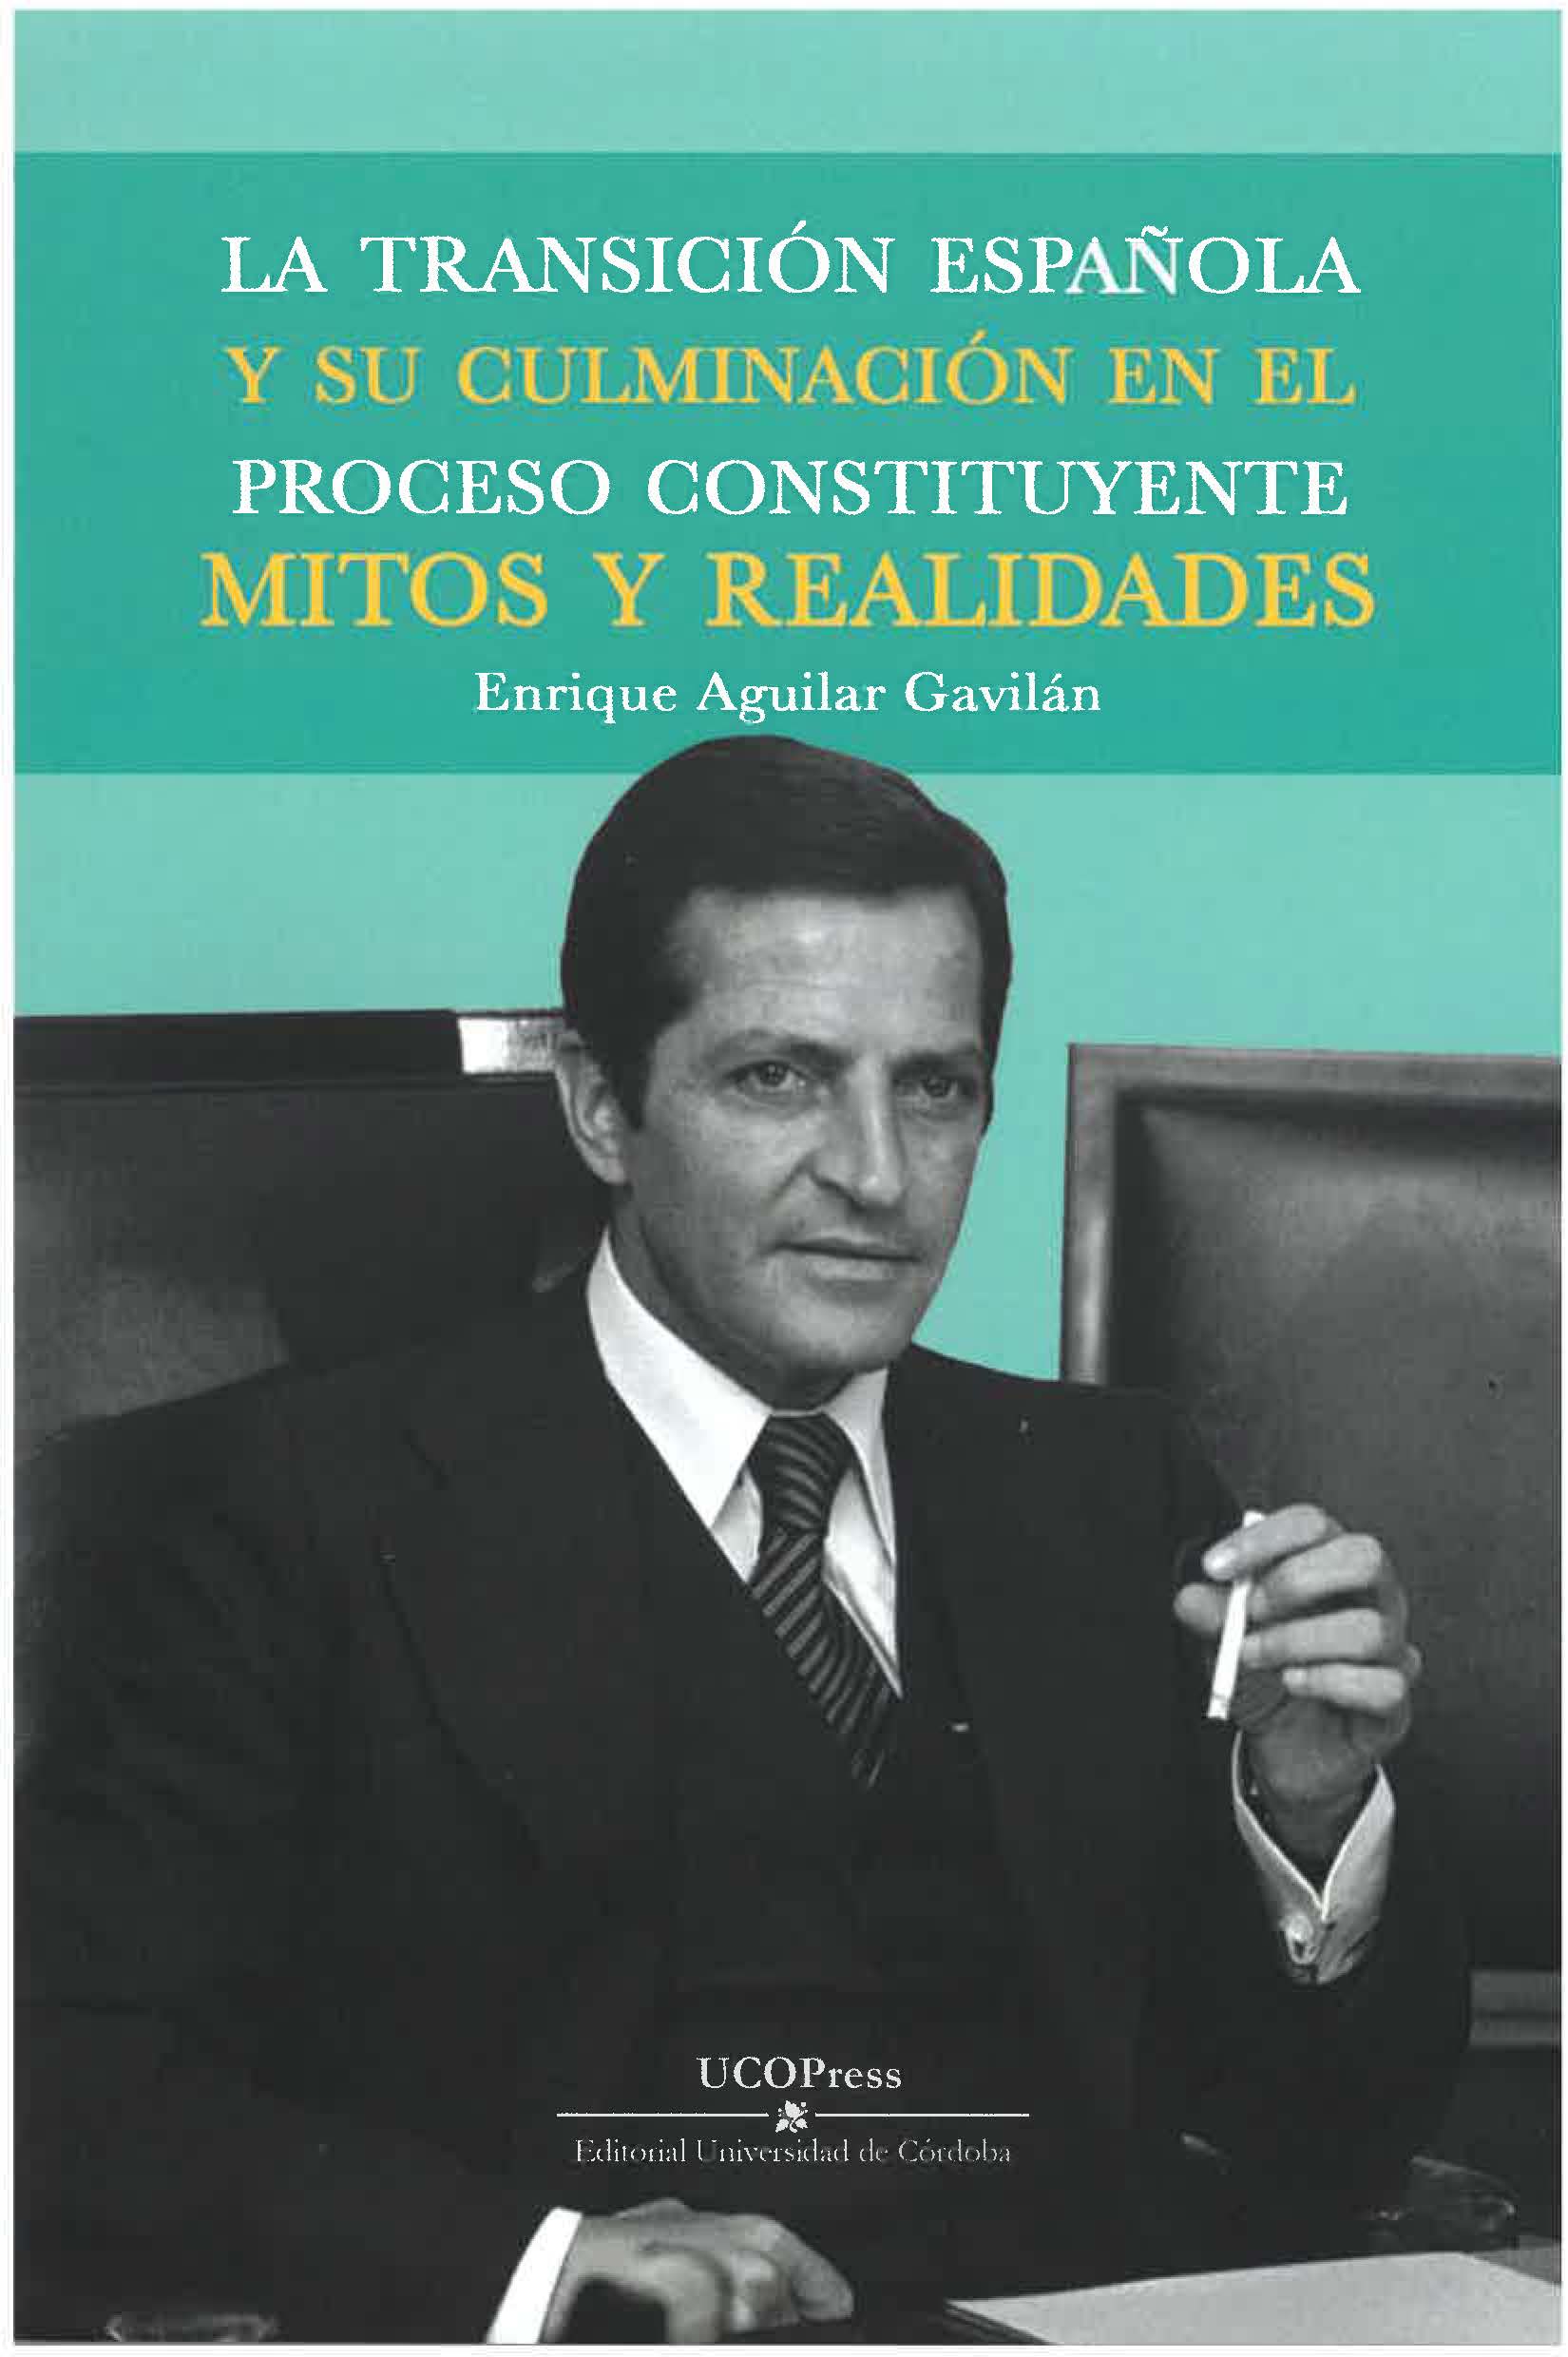 La Transición Española y su culminación en el proceso constituyente